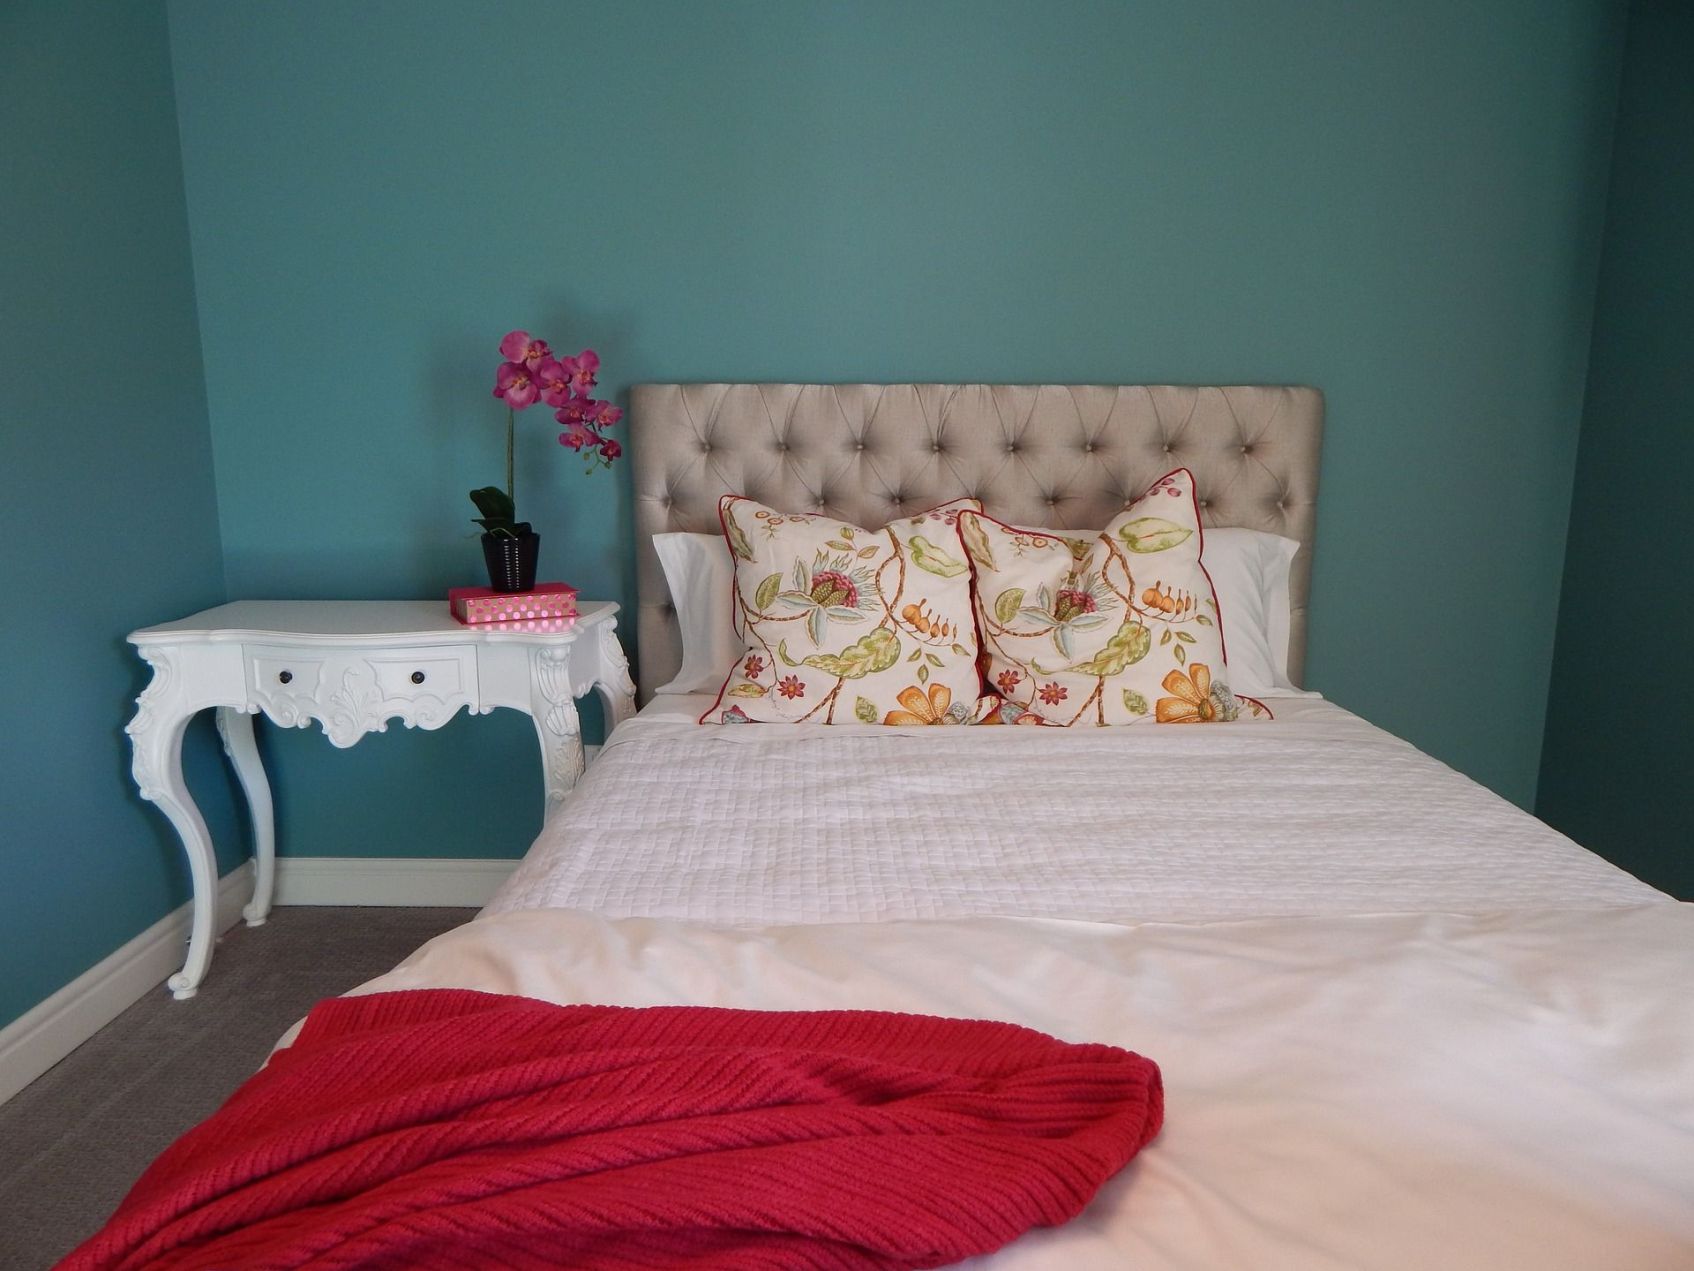 turkusowa sypialnia 13 pomyslow sypialnia kolory aranzacje inspiracje zdjecia dekoportal